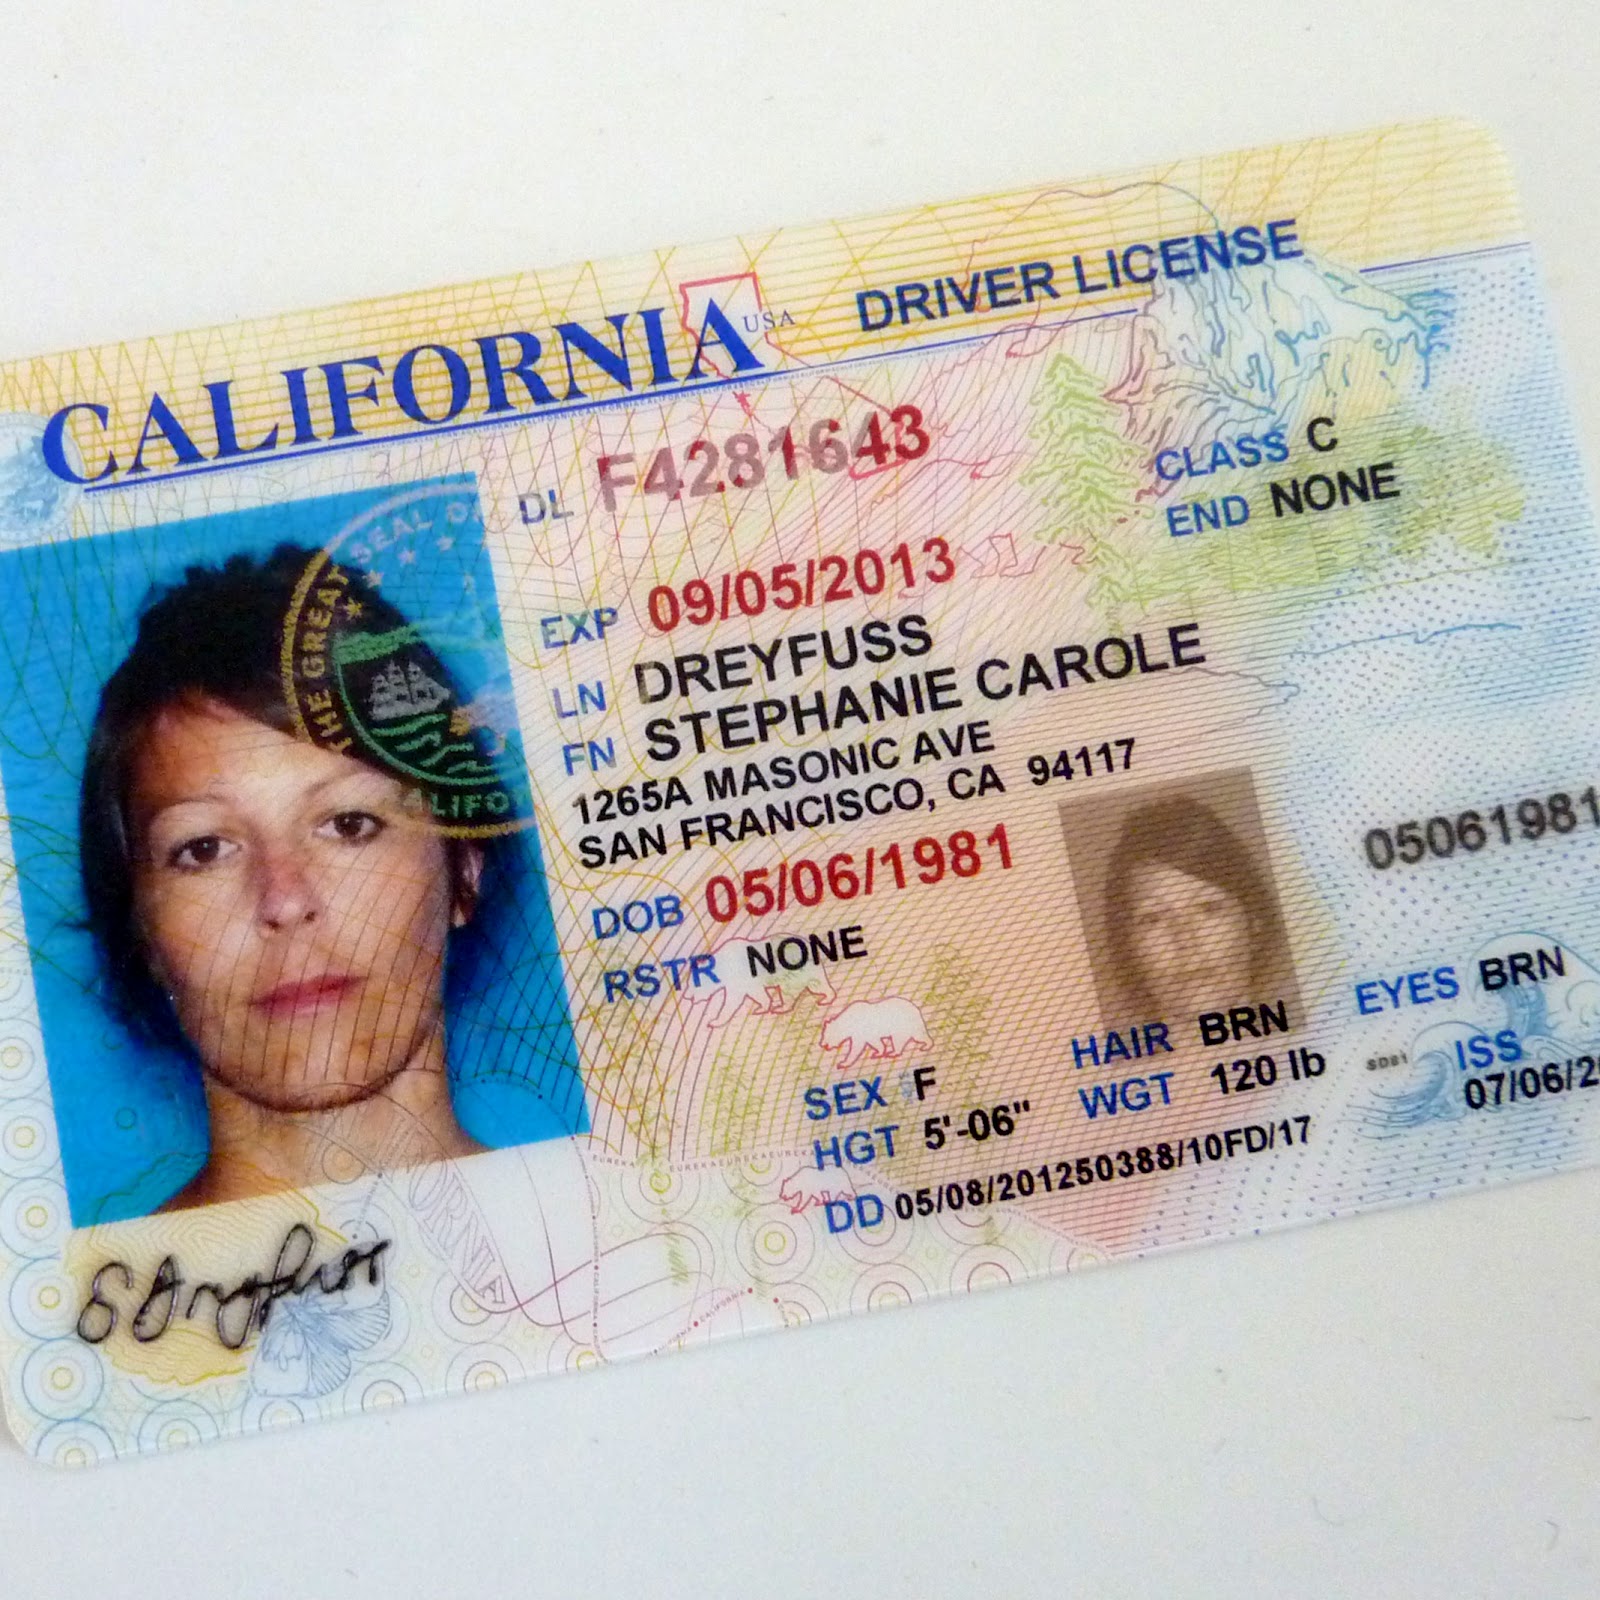 Driver s license. California Driver License. California Driving License. Driver License DC. Driver License USA California.